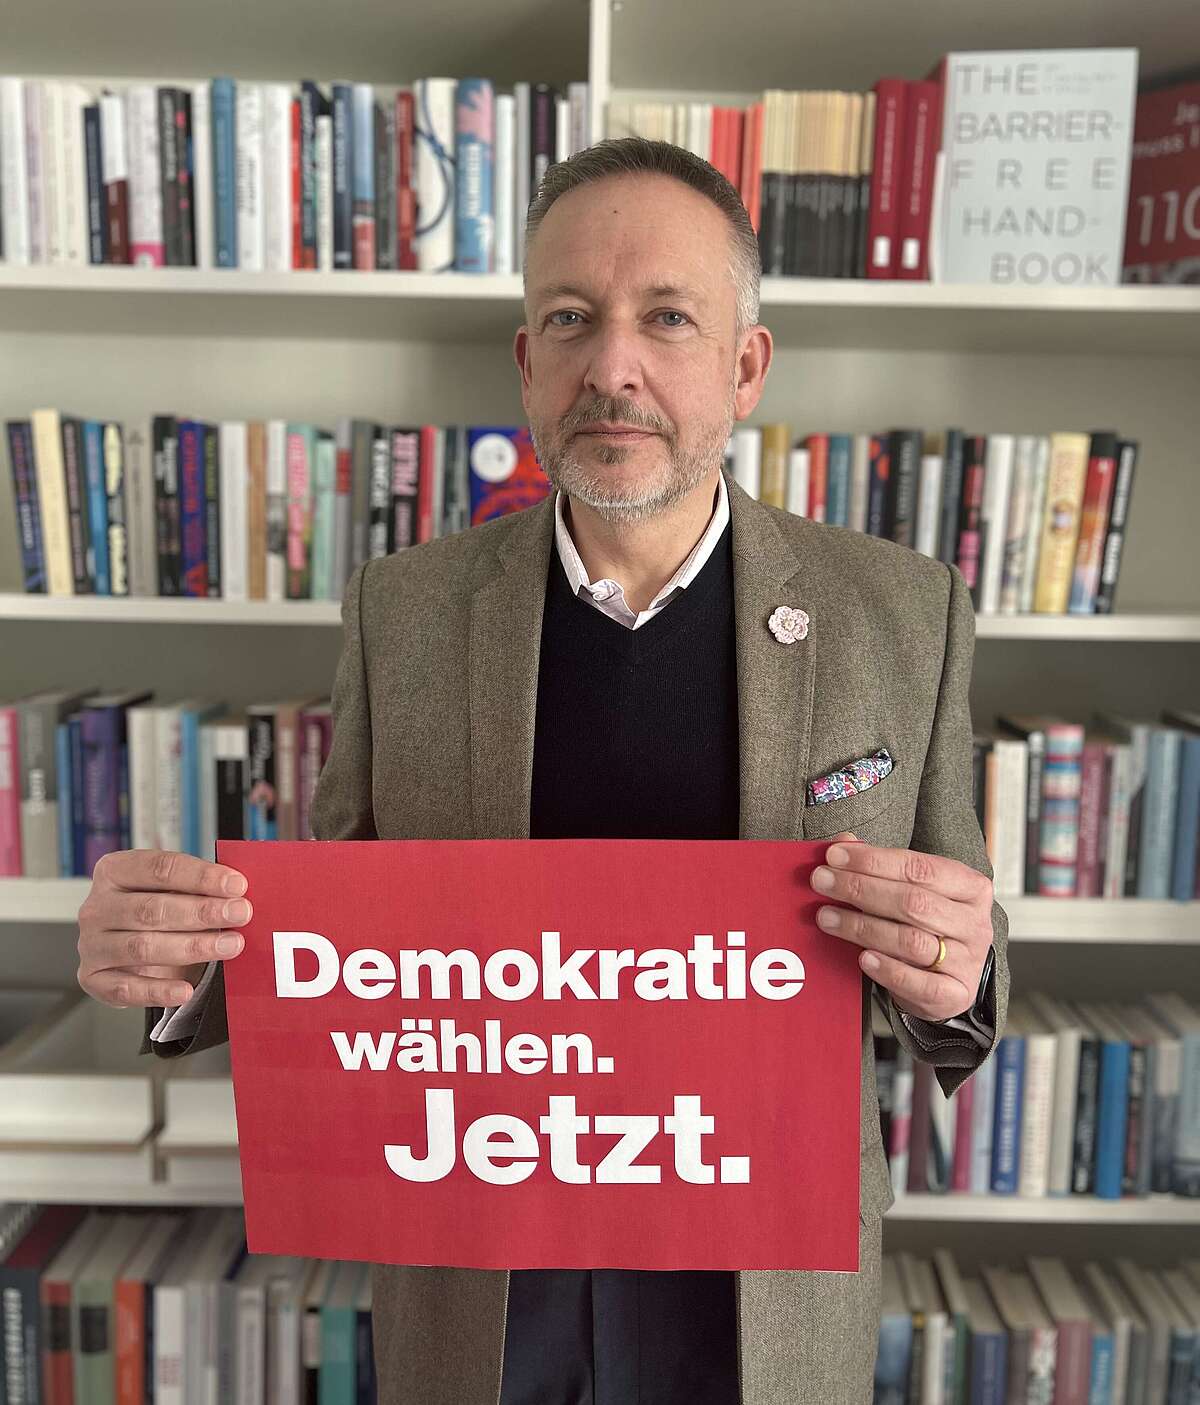 Hauptgeschäftsführer Peter Kraus vom Cleff hält ein Plakat in der Hand mit dem Schriftzug "Demokratie wählen. Jetzt."